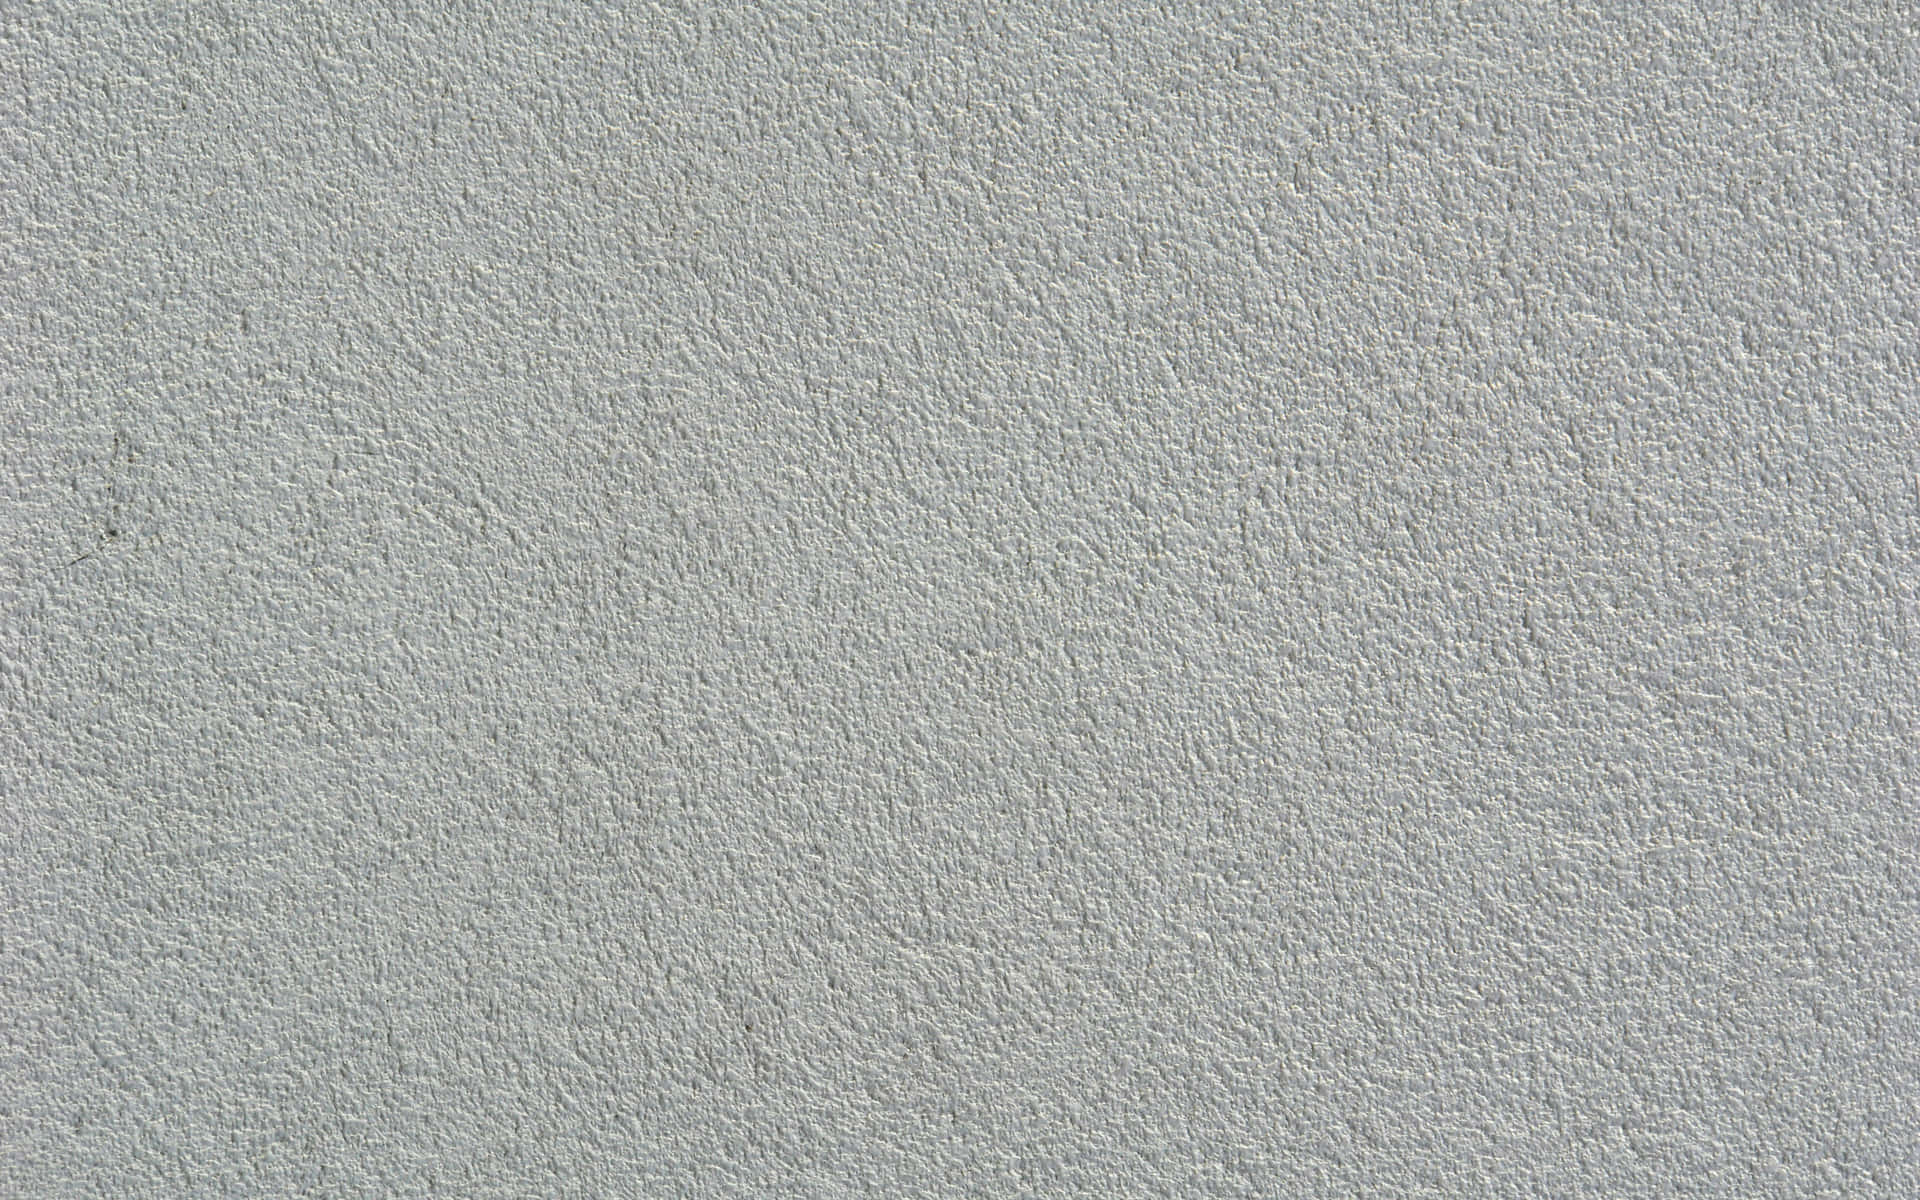 Tapetenrauebeulen Weiße Textur Hintergrund